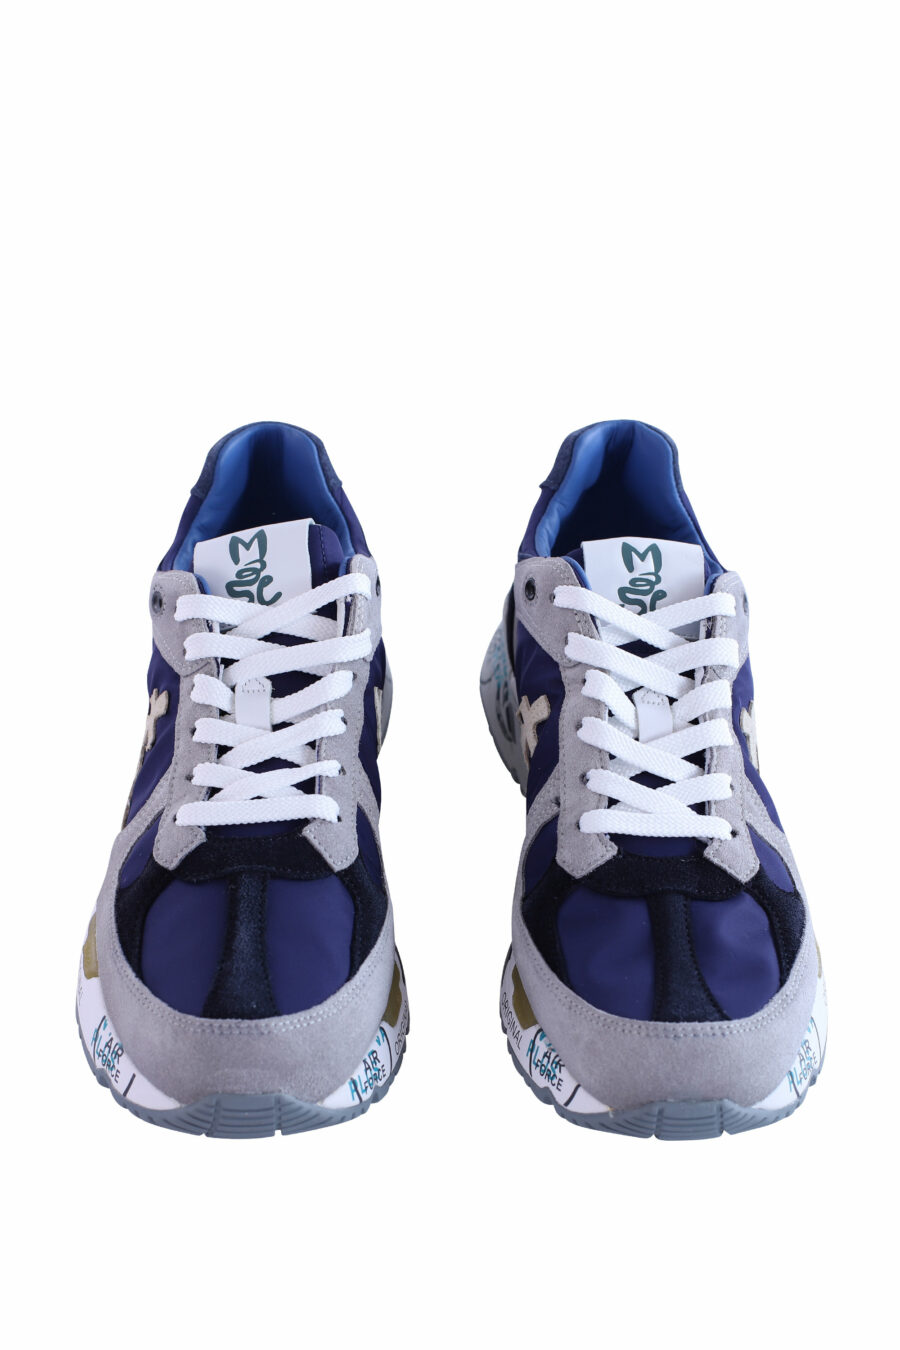 Zapatillas azules con gris "mase 6155" - IMG 3009